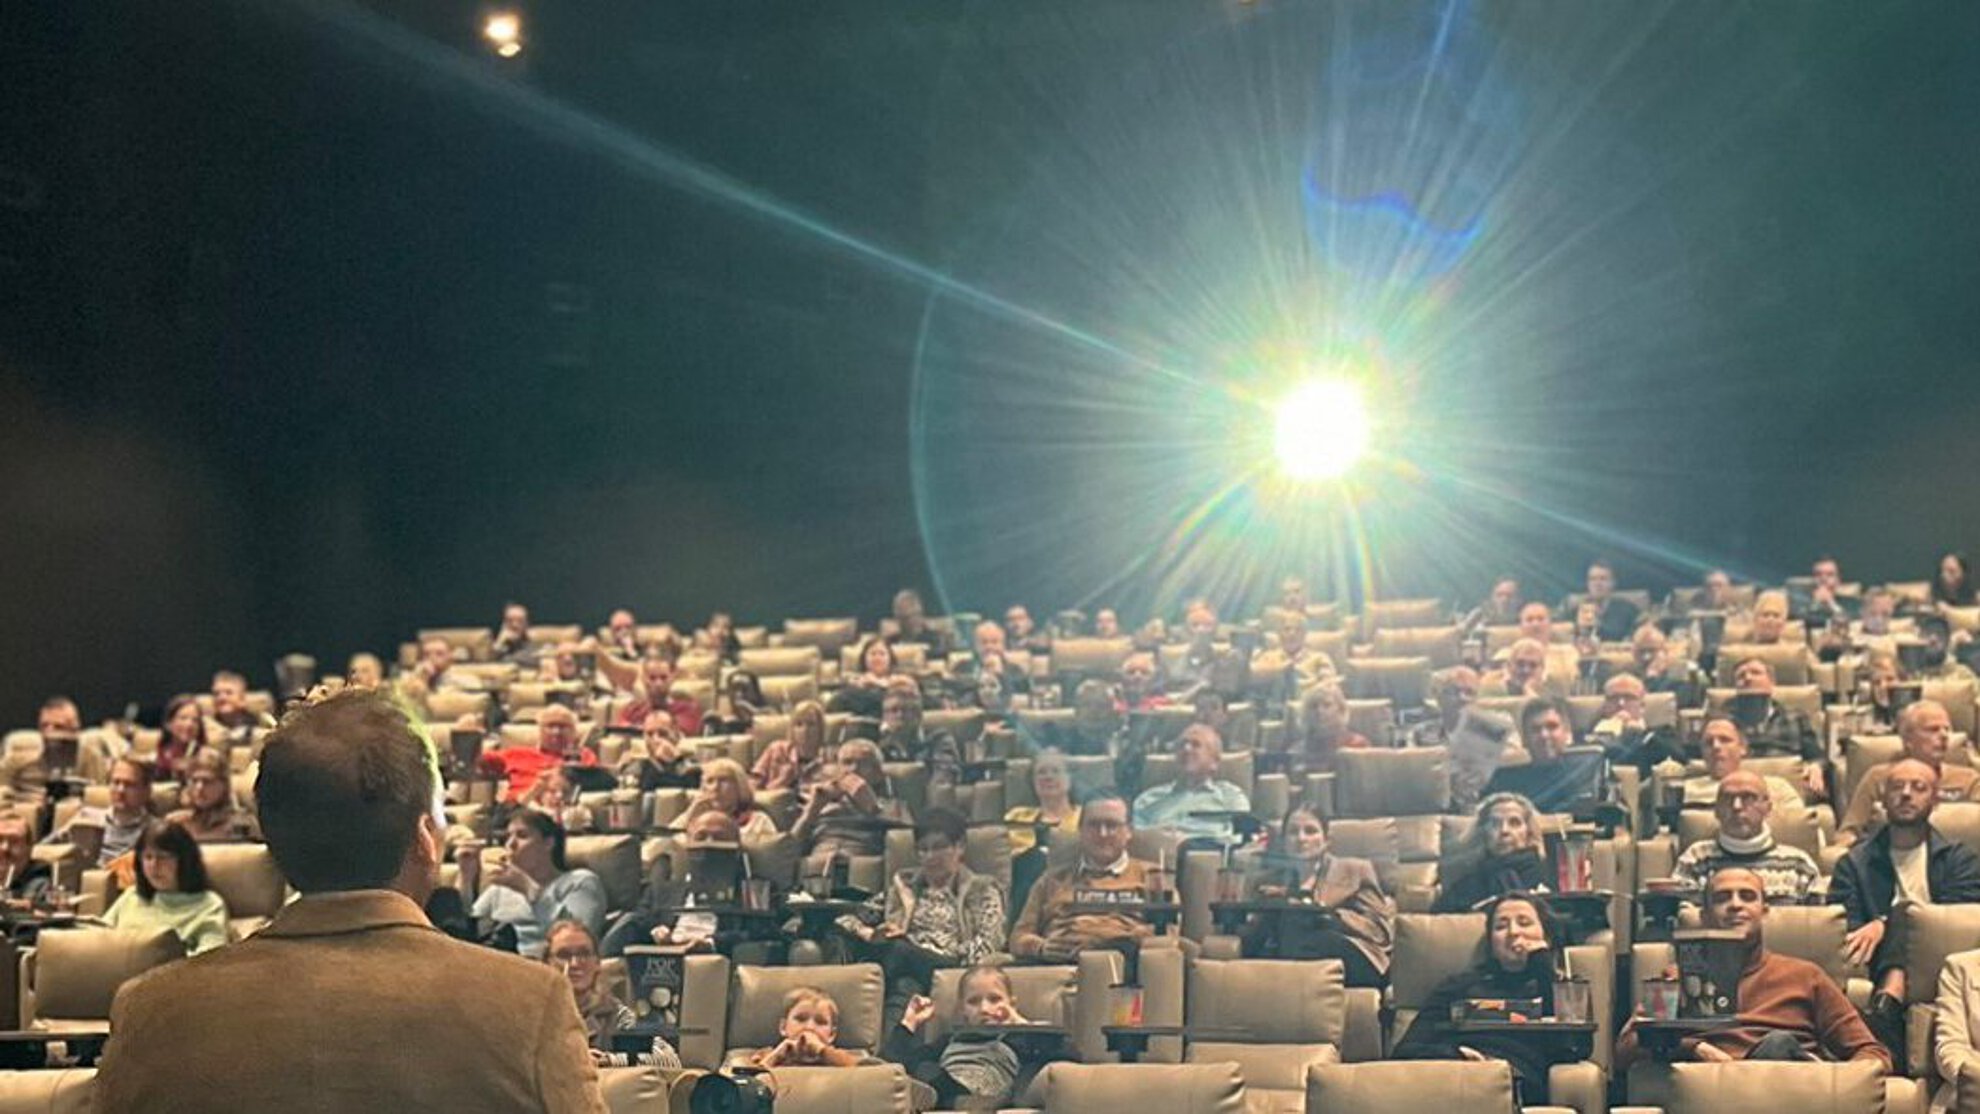 Vortrag vor großer Menge in einem Kinosaal von Tobias Stahl